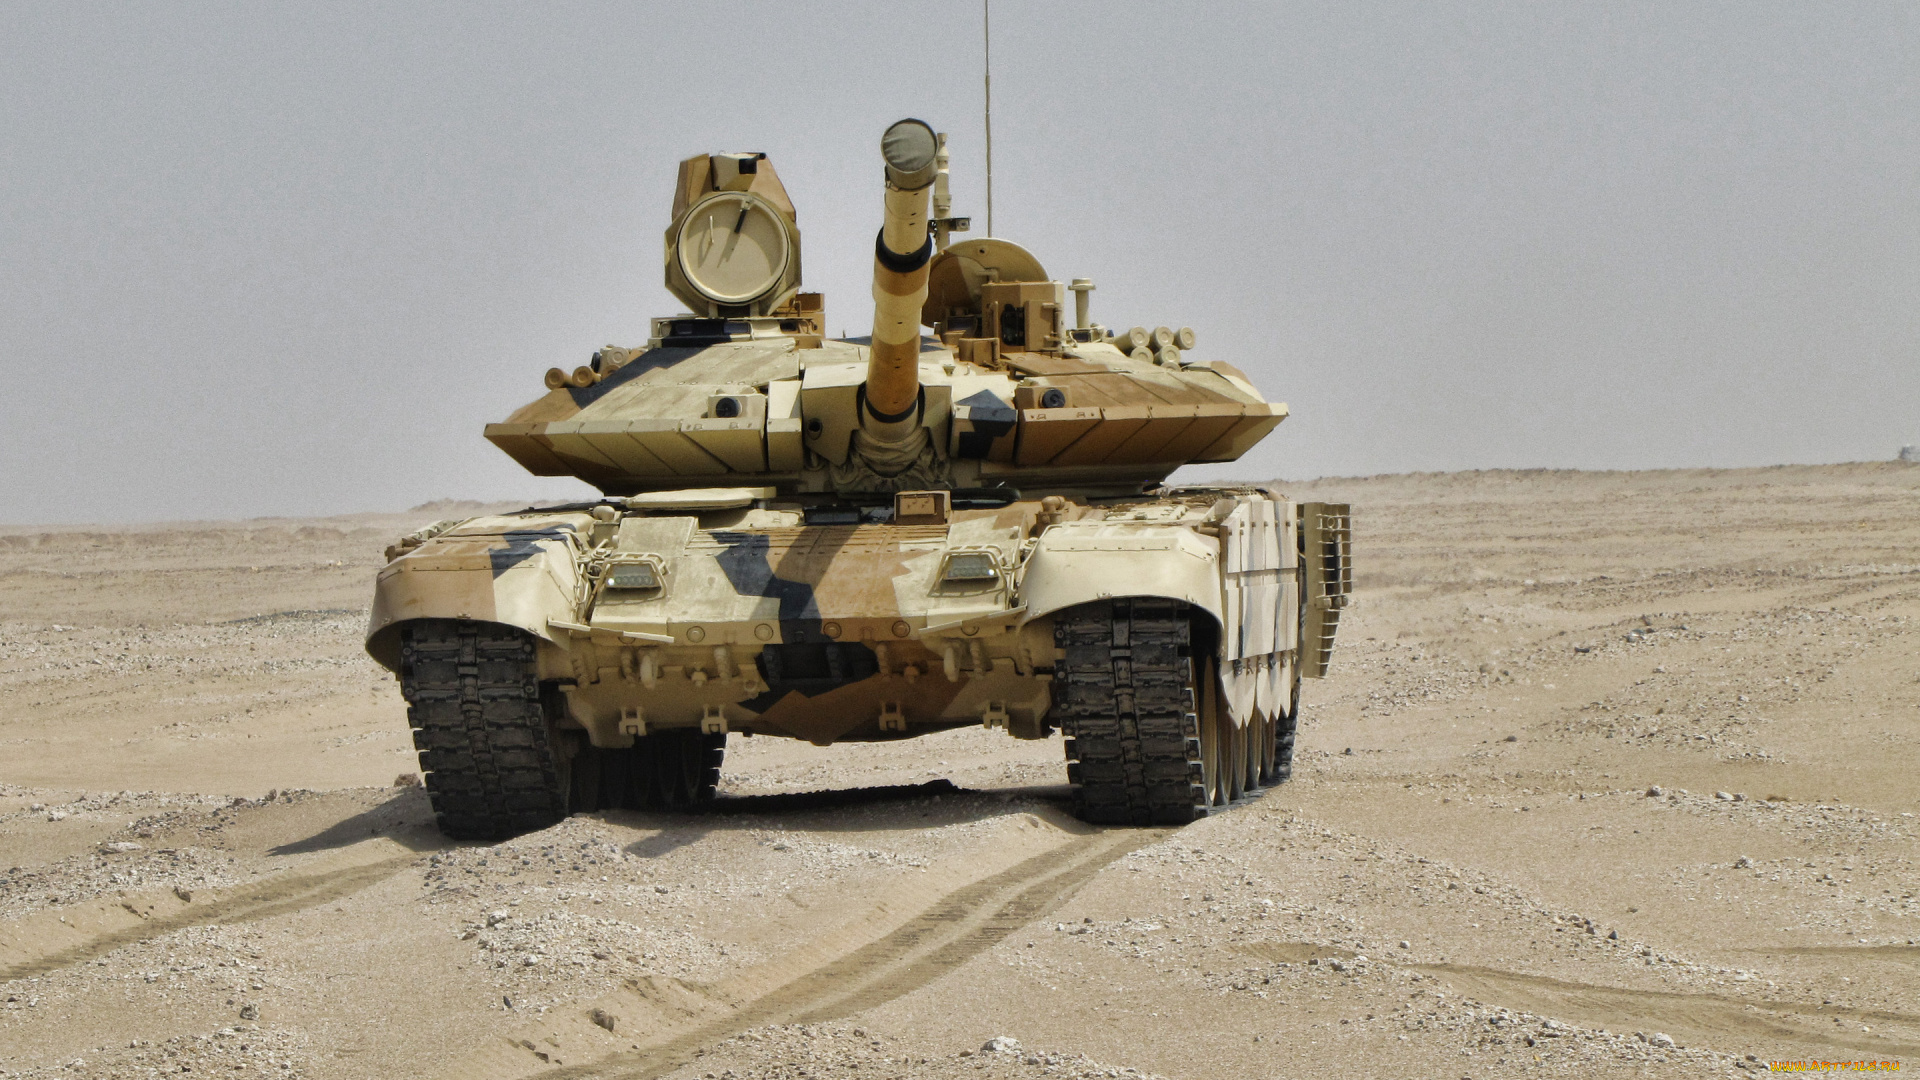 т-90мс, техника, военная, техника, t-90ms, российский, основной, боевой, танк, mbt, т90, современные, танки, пустыня, песчаный, камуфляж